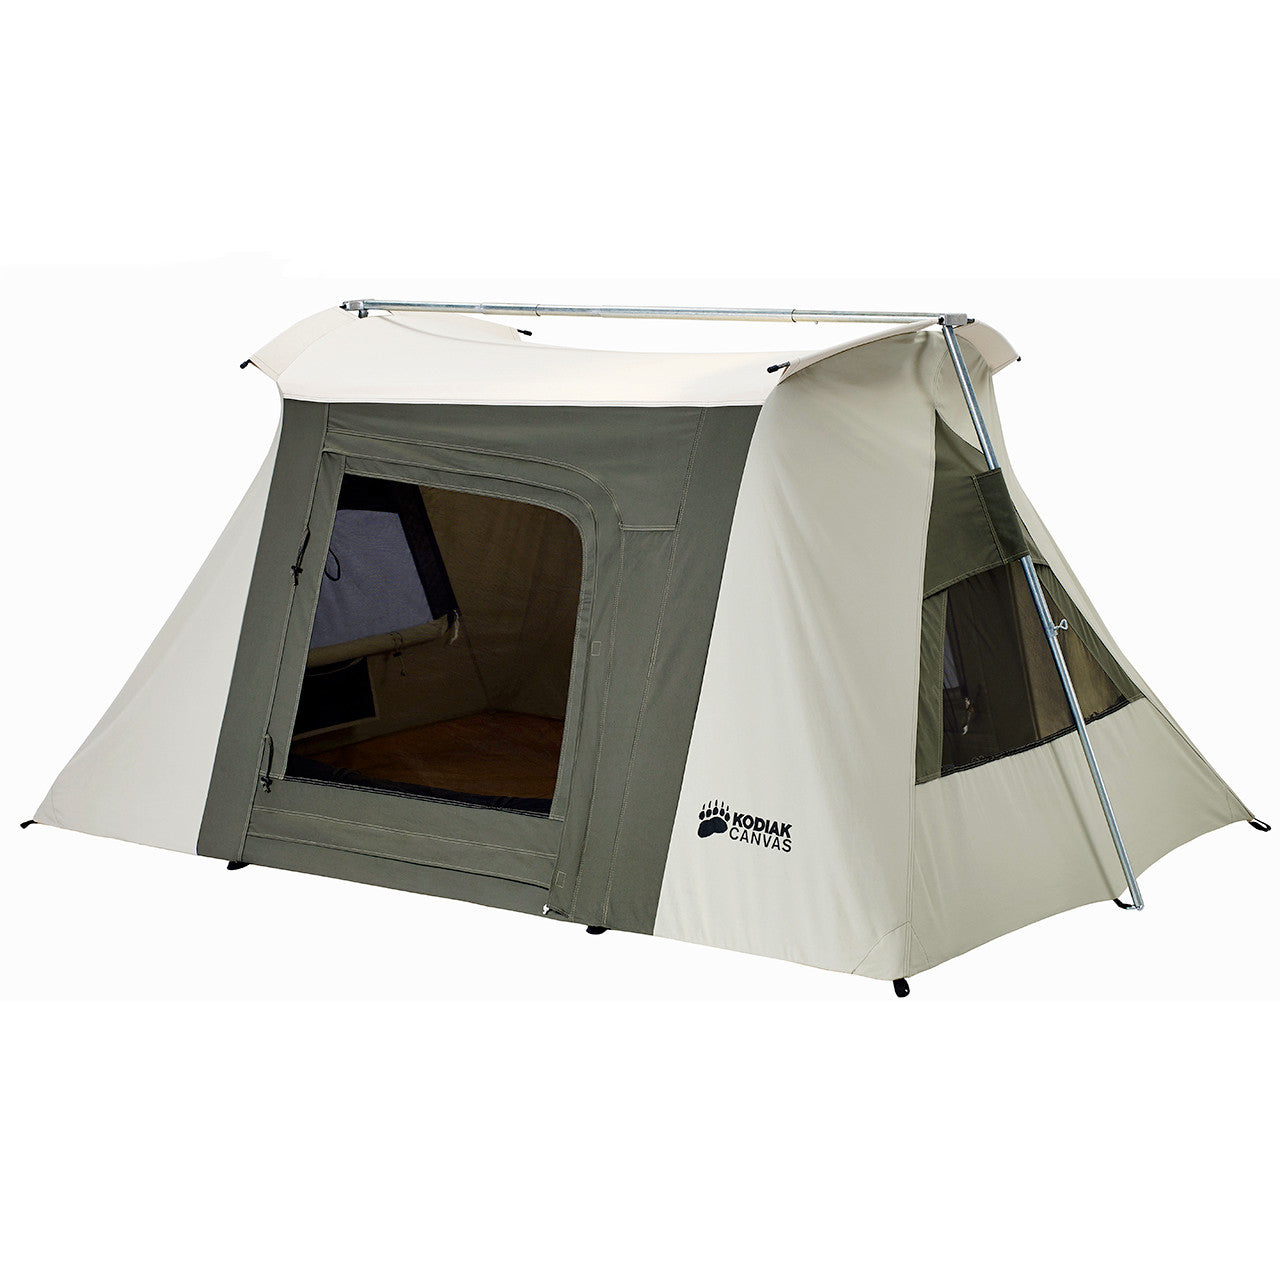 Kodiak Canvas Flex-Bow VX Canvas Camping Tent 8.5 x 6 feet